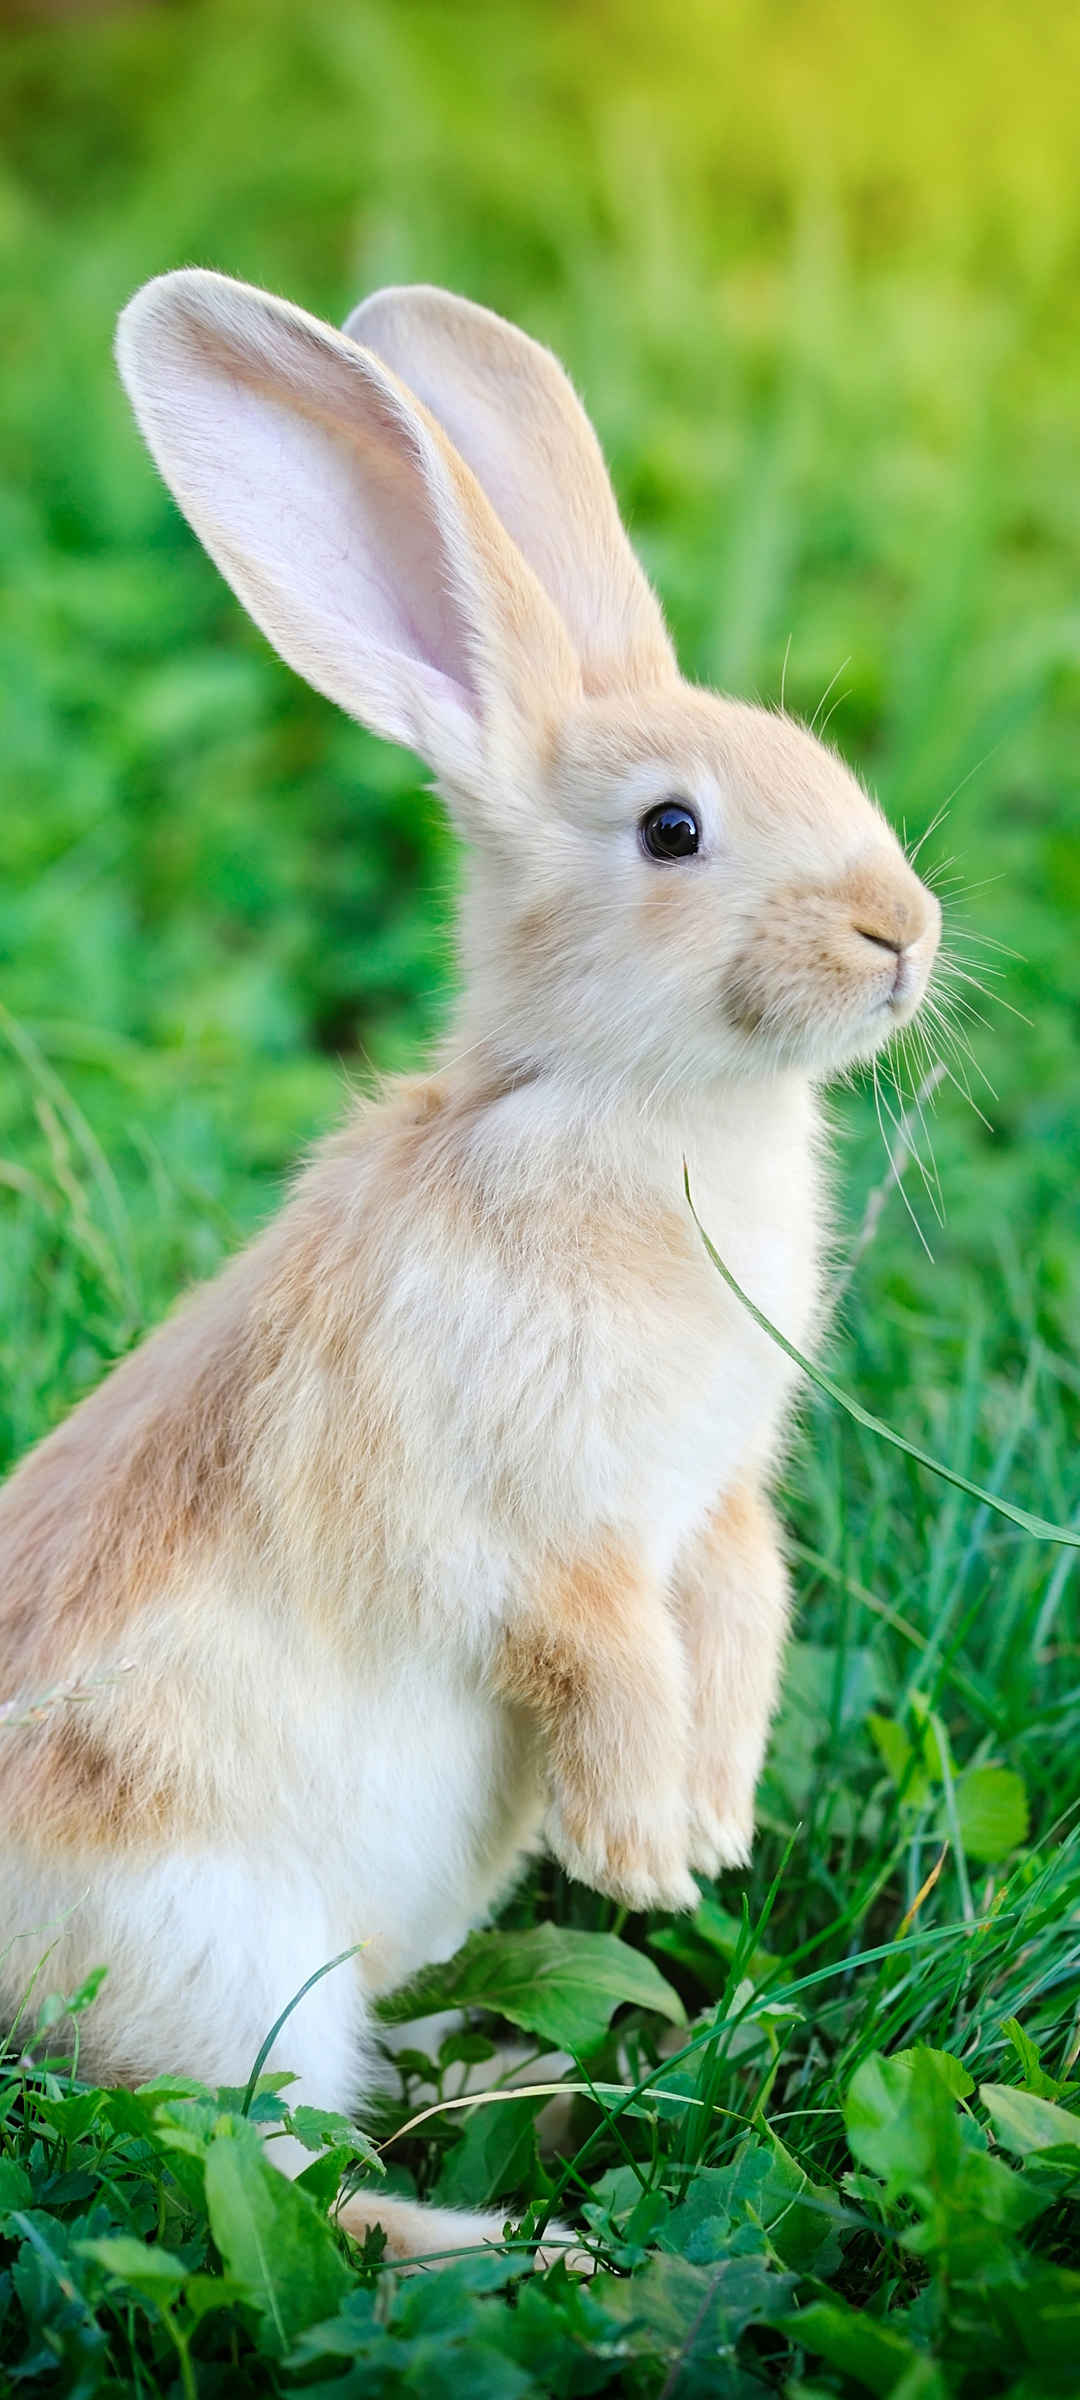 长耳朵兔子小动物壁纸高清图片